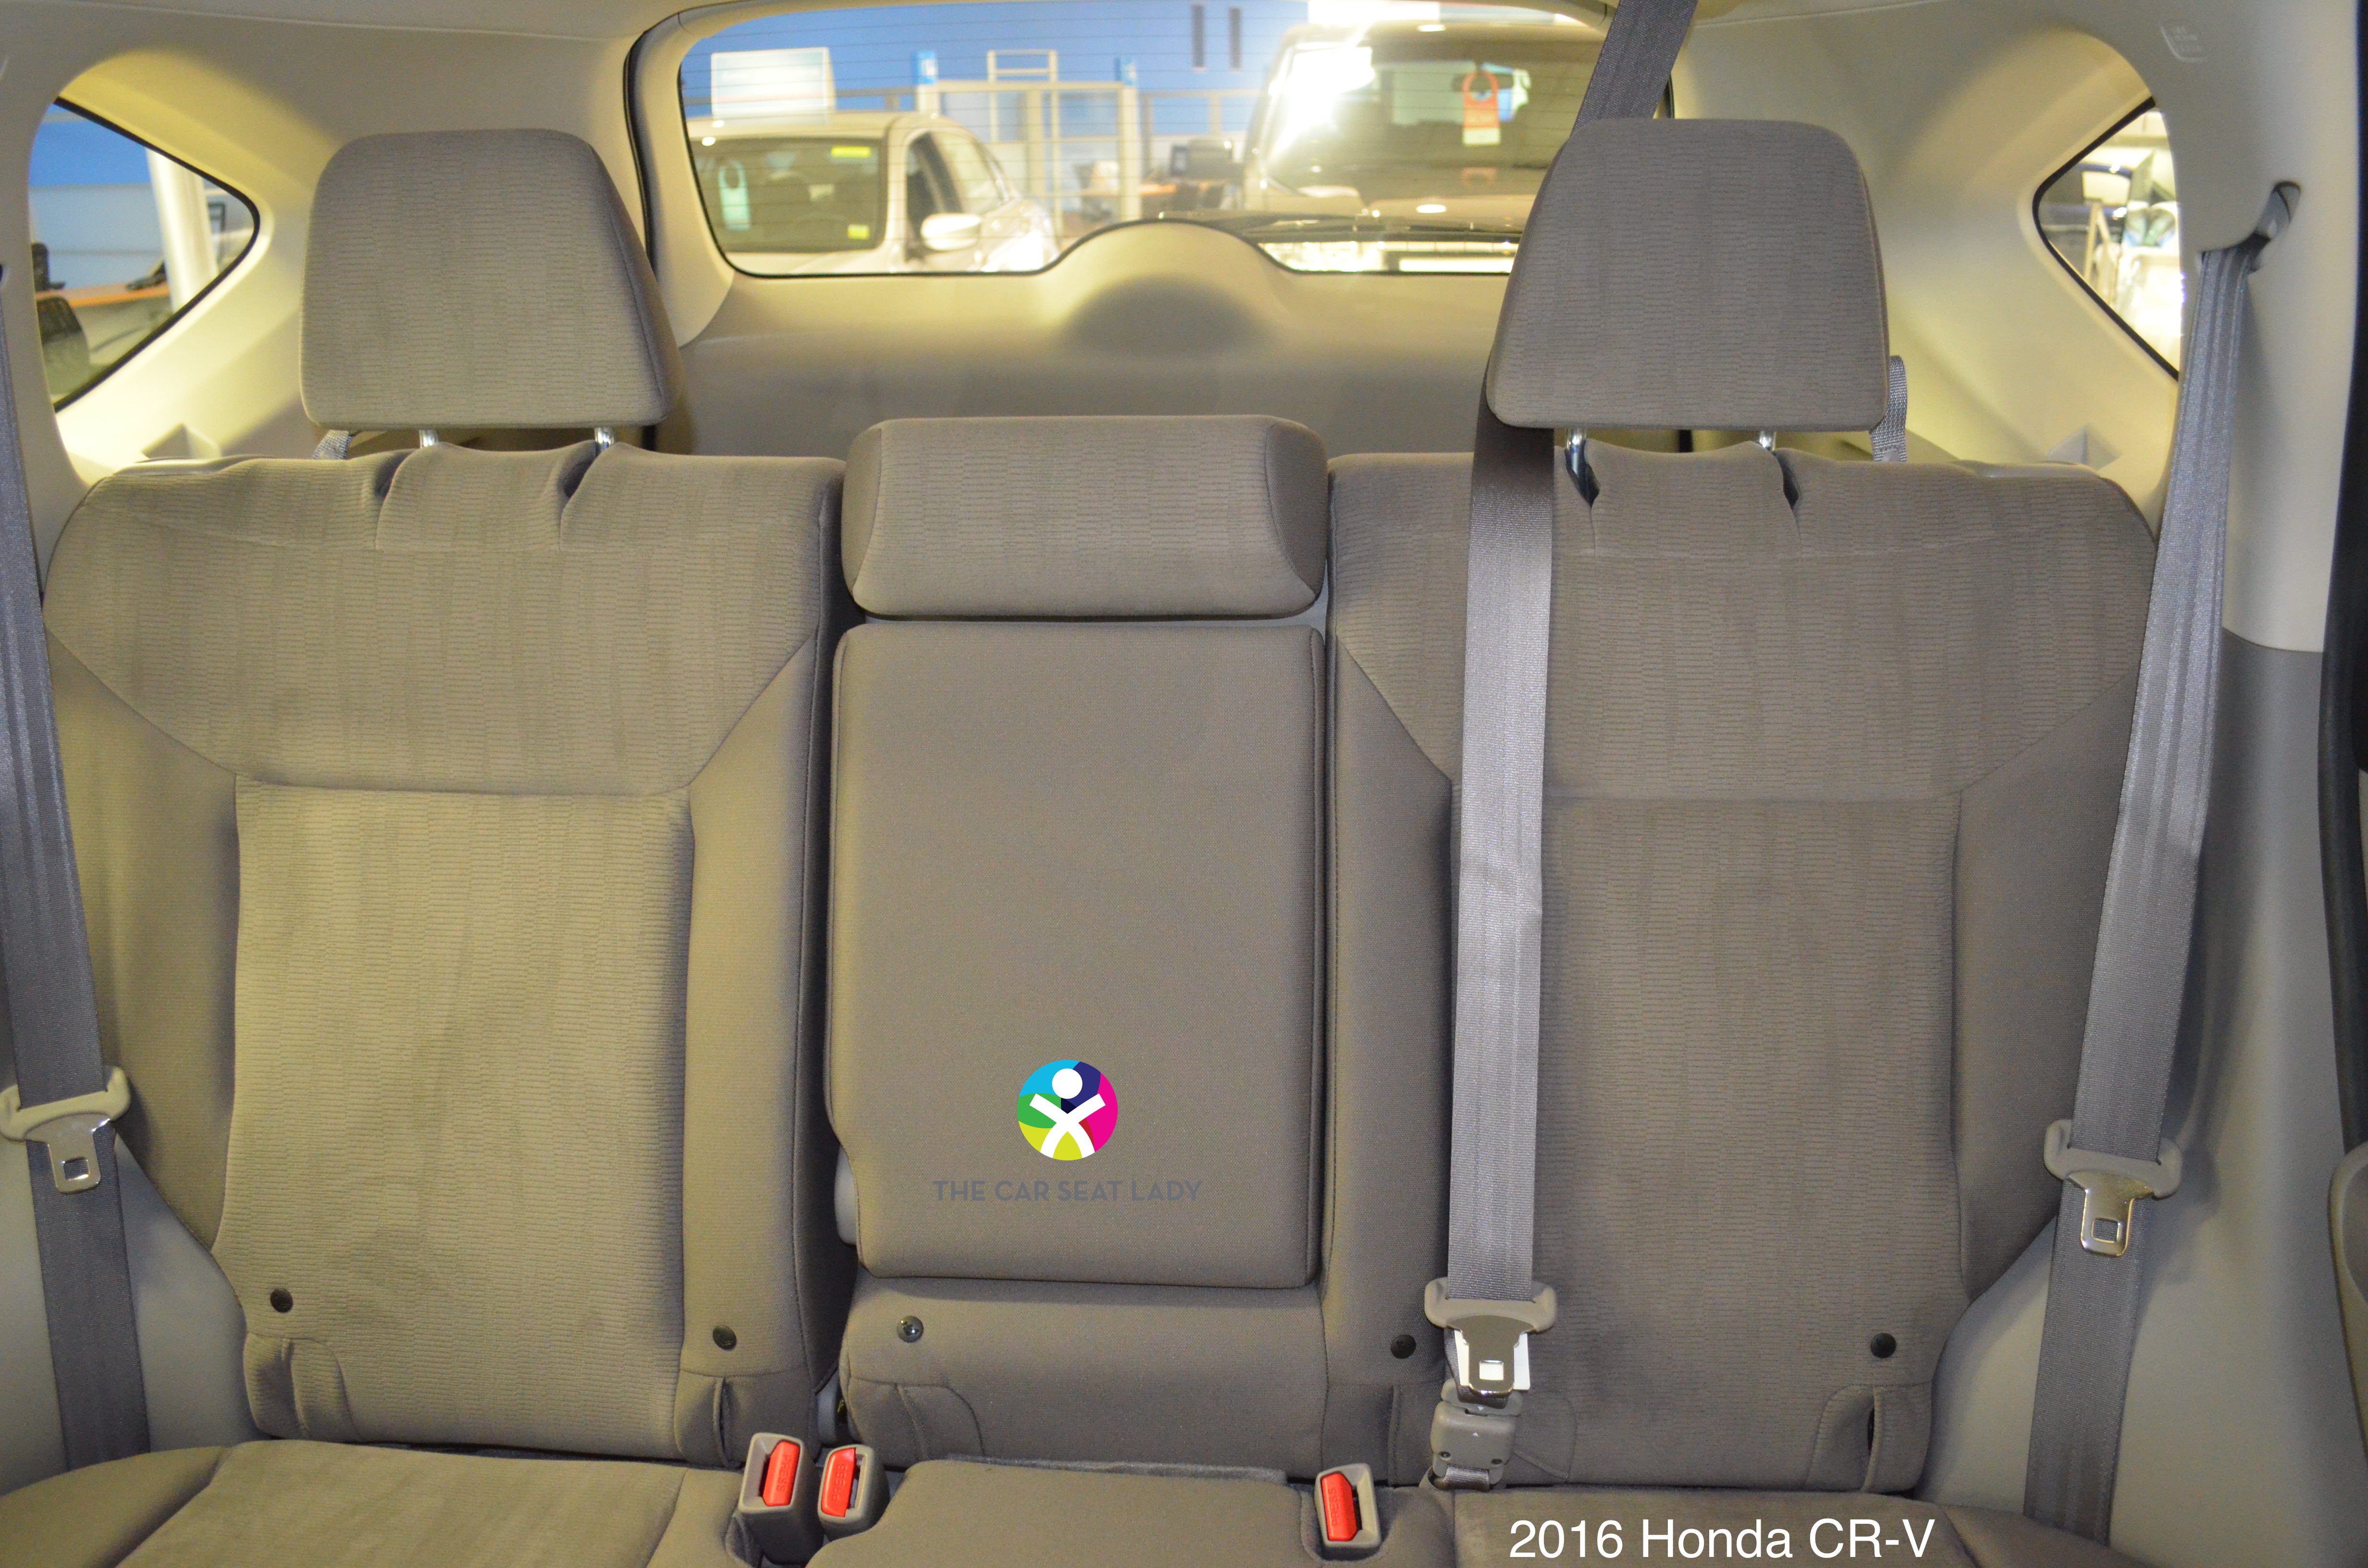 The Car Seat Lady Honda CRV